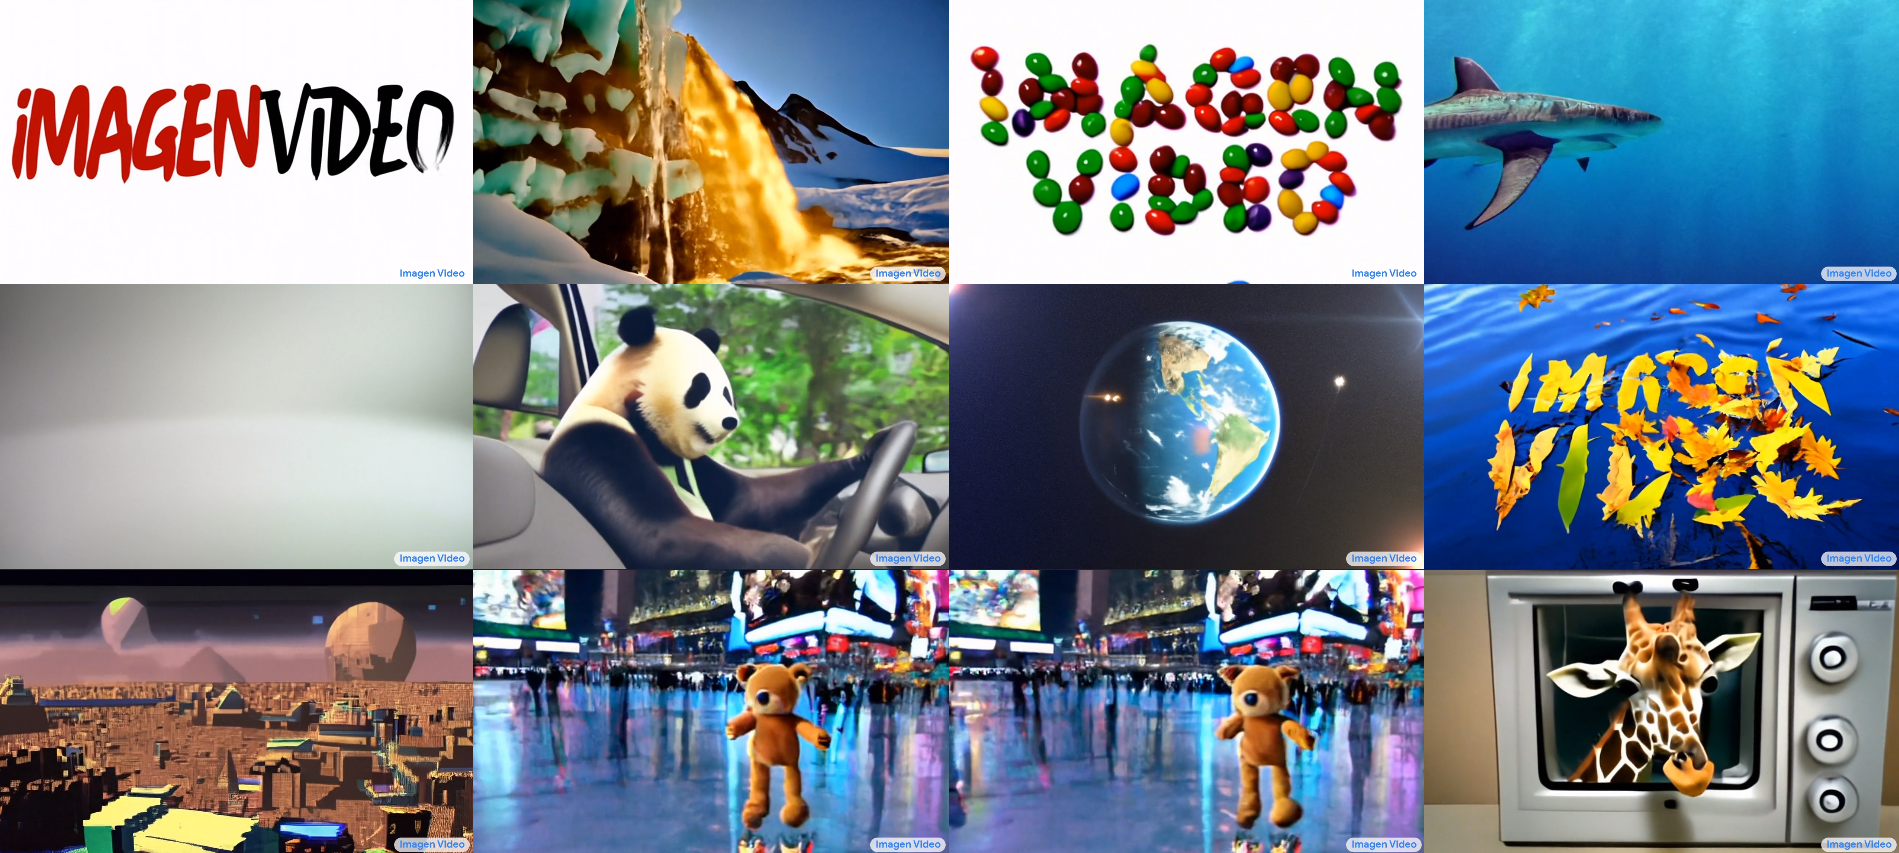 Google stworzyło sieć neuronową Imagen Video, która tworzy filmy z opisów tekstowych